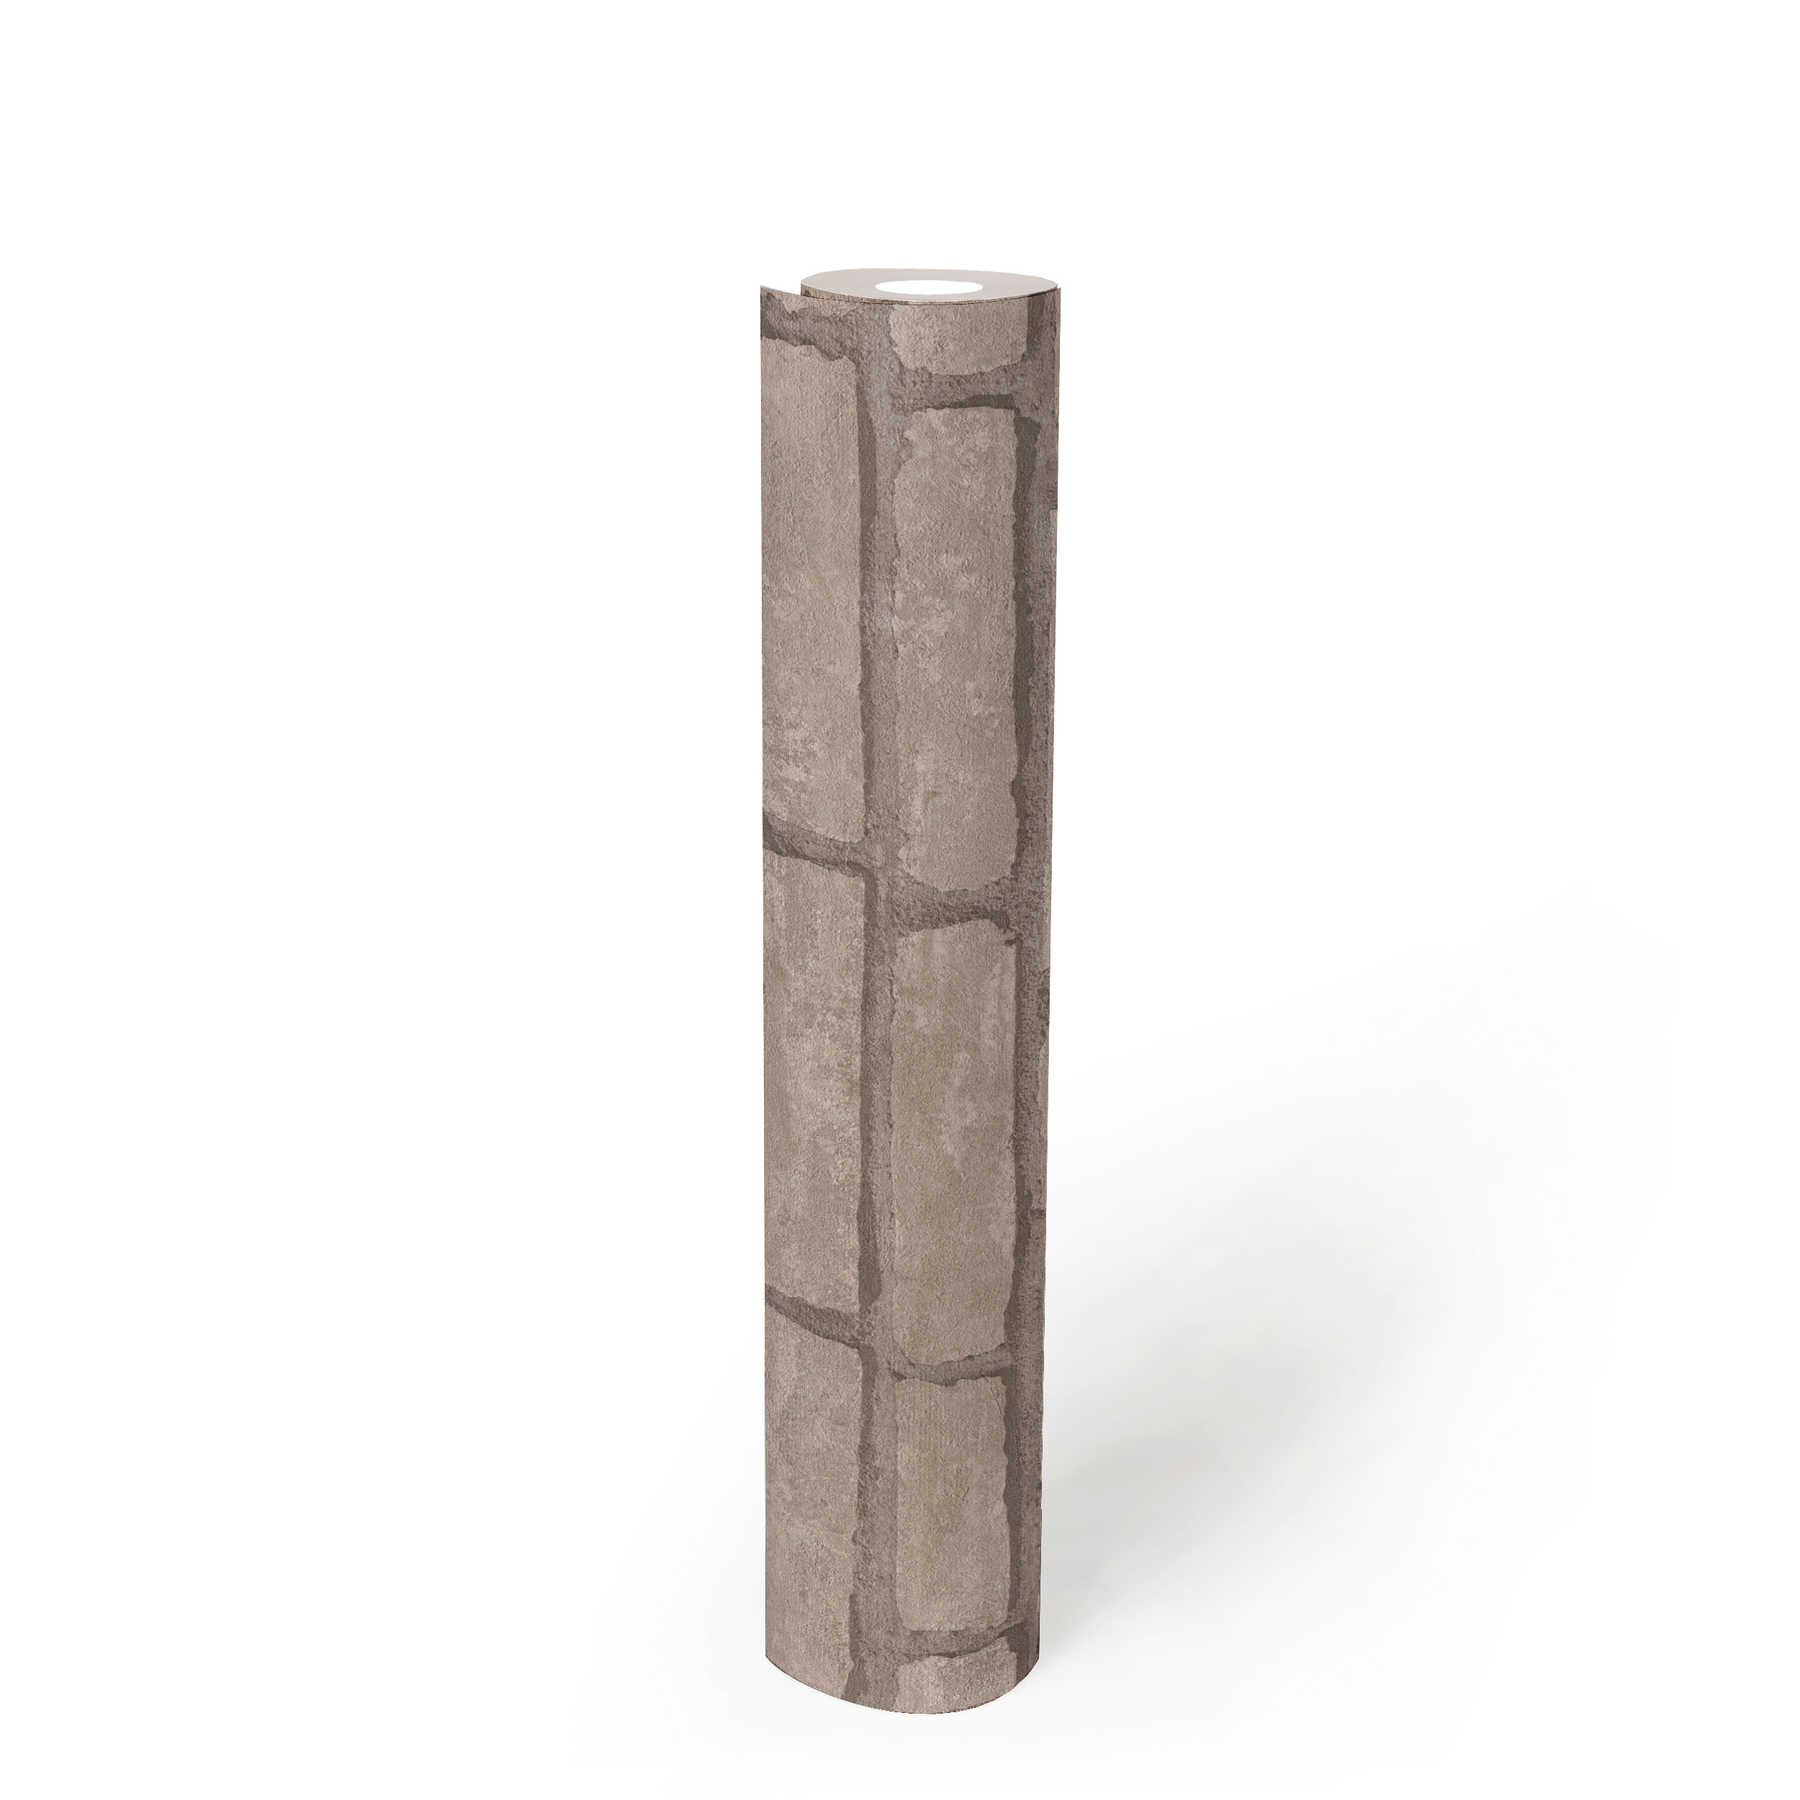             Steintapete braunes Ziegel-Mauerwerk – Grau, Beige
        